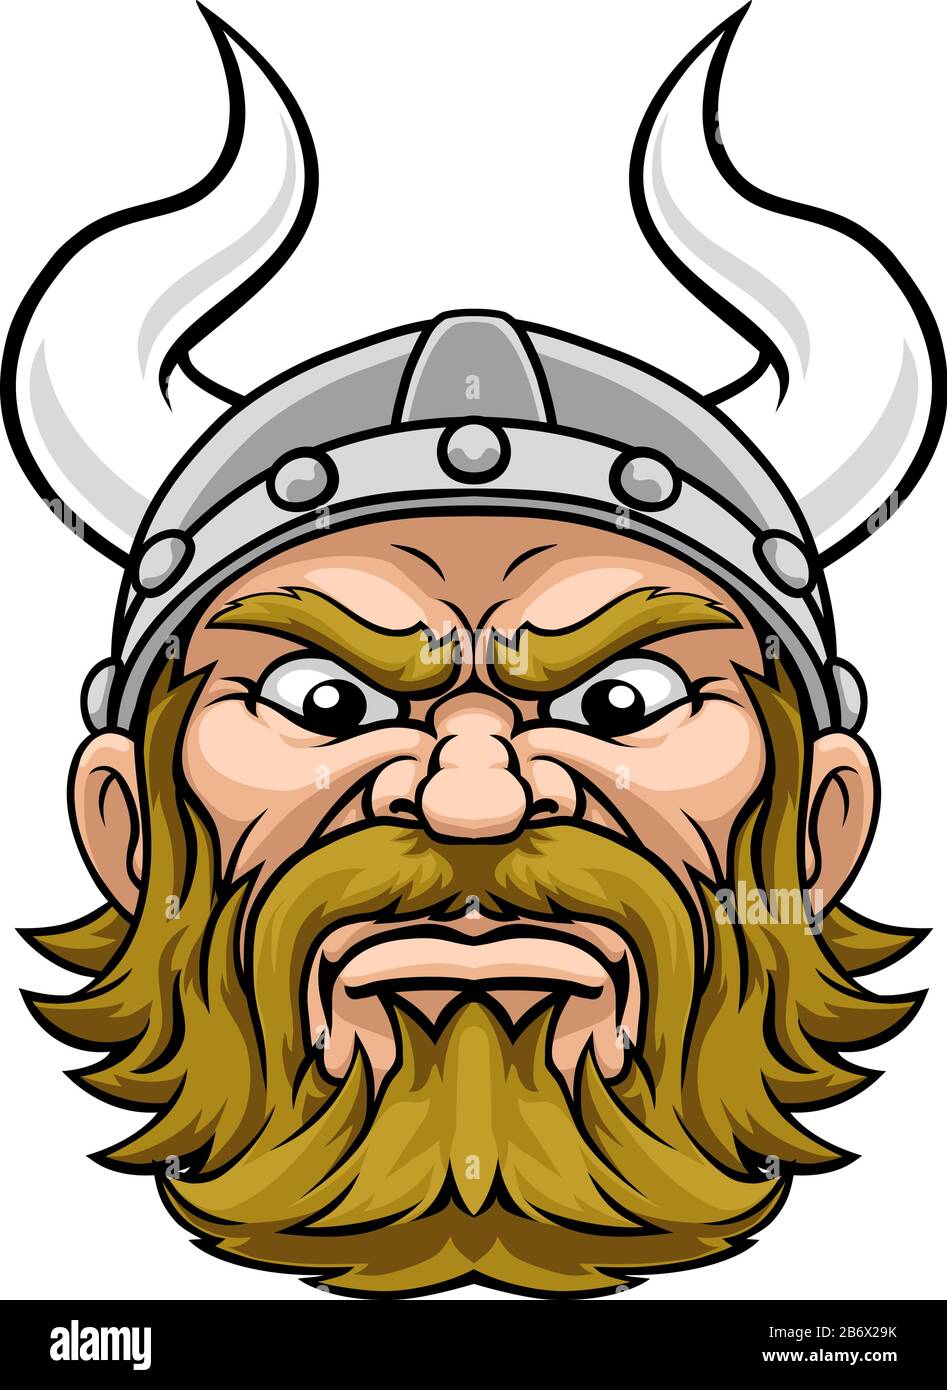 Carion De Mascotte Du Guerrier Viking Illustration de Vecteur